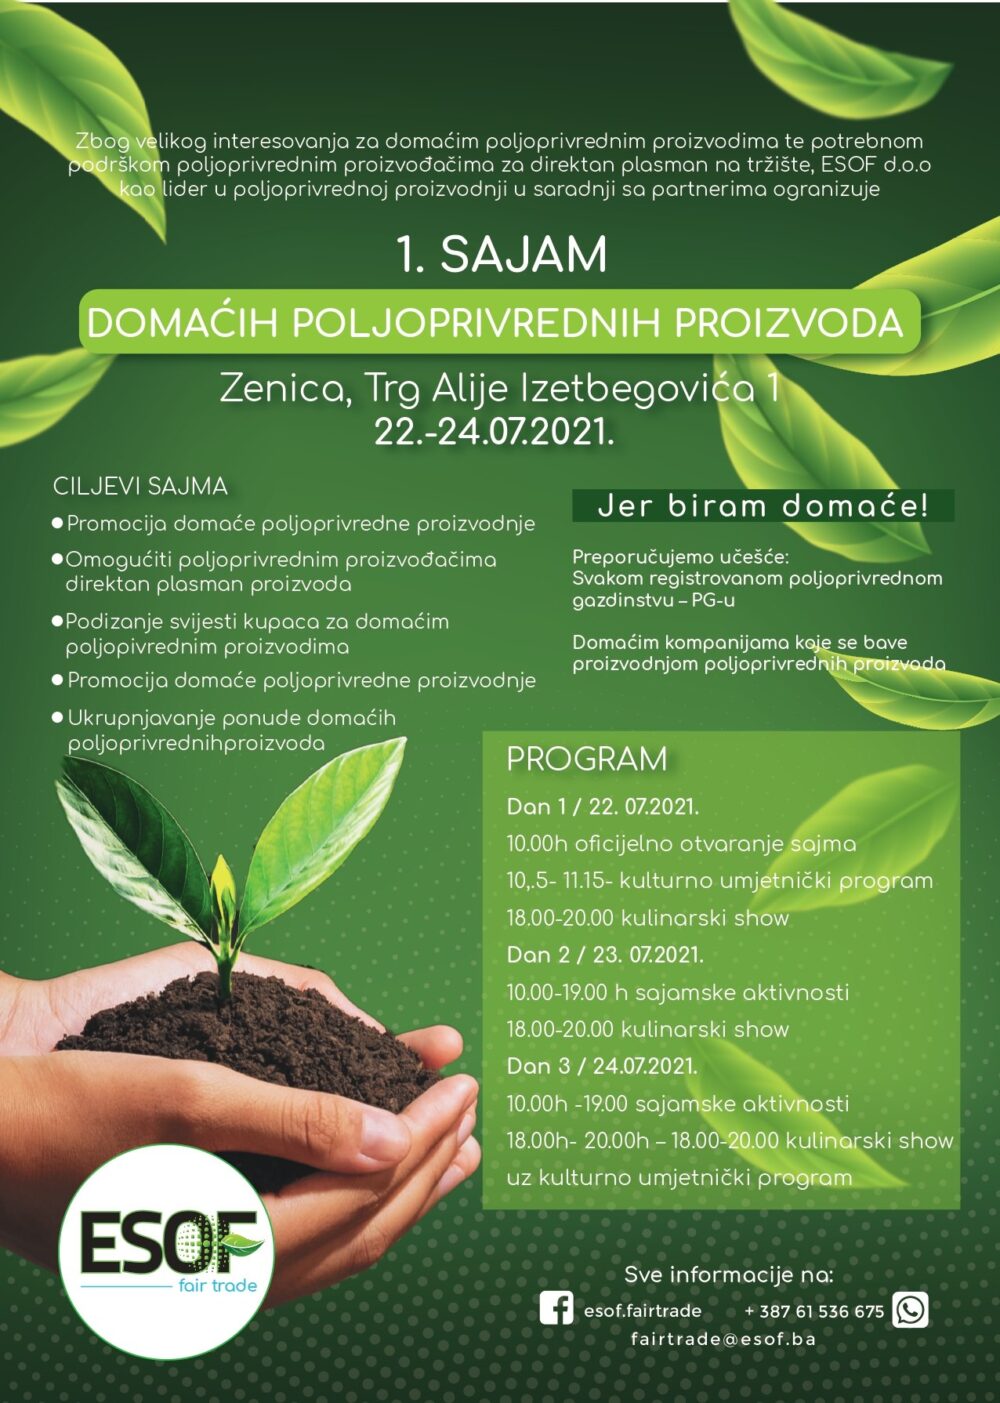 Sajam domaćih poljoprivrednih proizvoda, biće održan u Zenici u periodu od 22 - 24.07.2021. god.